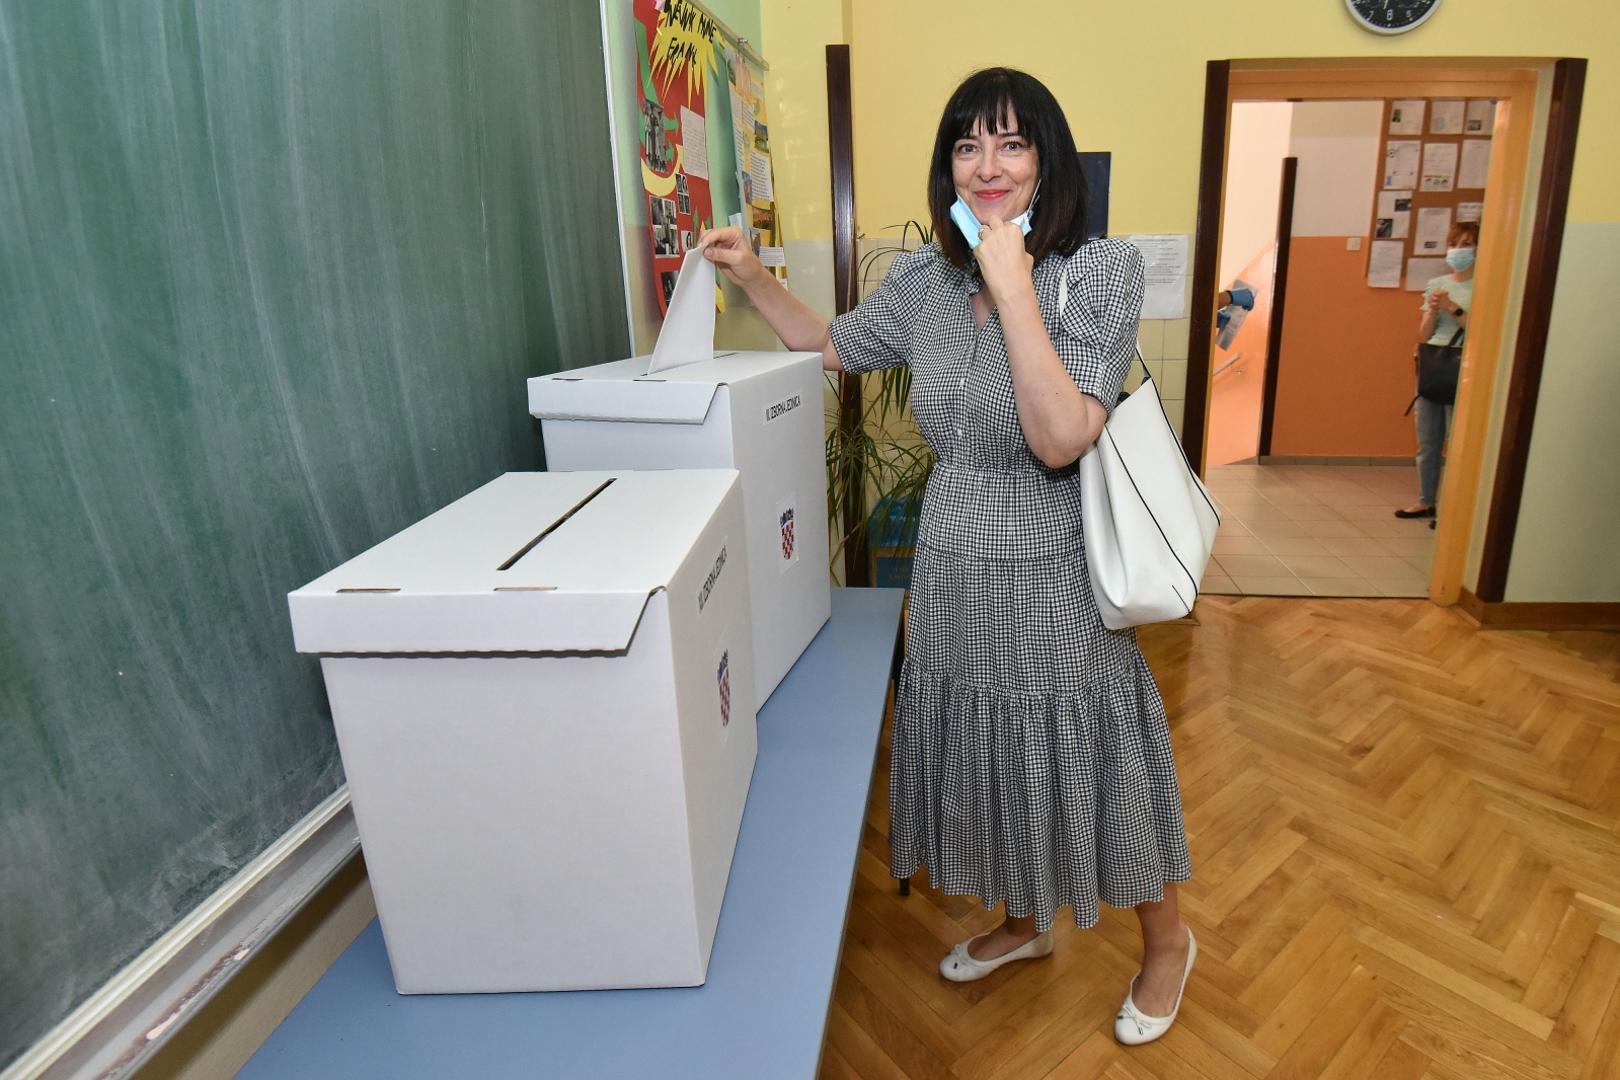 05.07.2020., Varazdin- Nezavisna kandidatkinja na listi HNS-a Blazenka Divjak, glasala na parlamentarnim izborima.
Photo: Vjeran Zganec Rogulja/PIXSELL